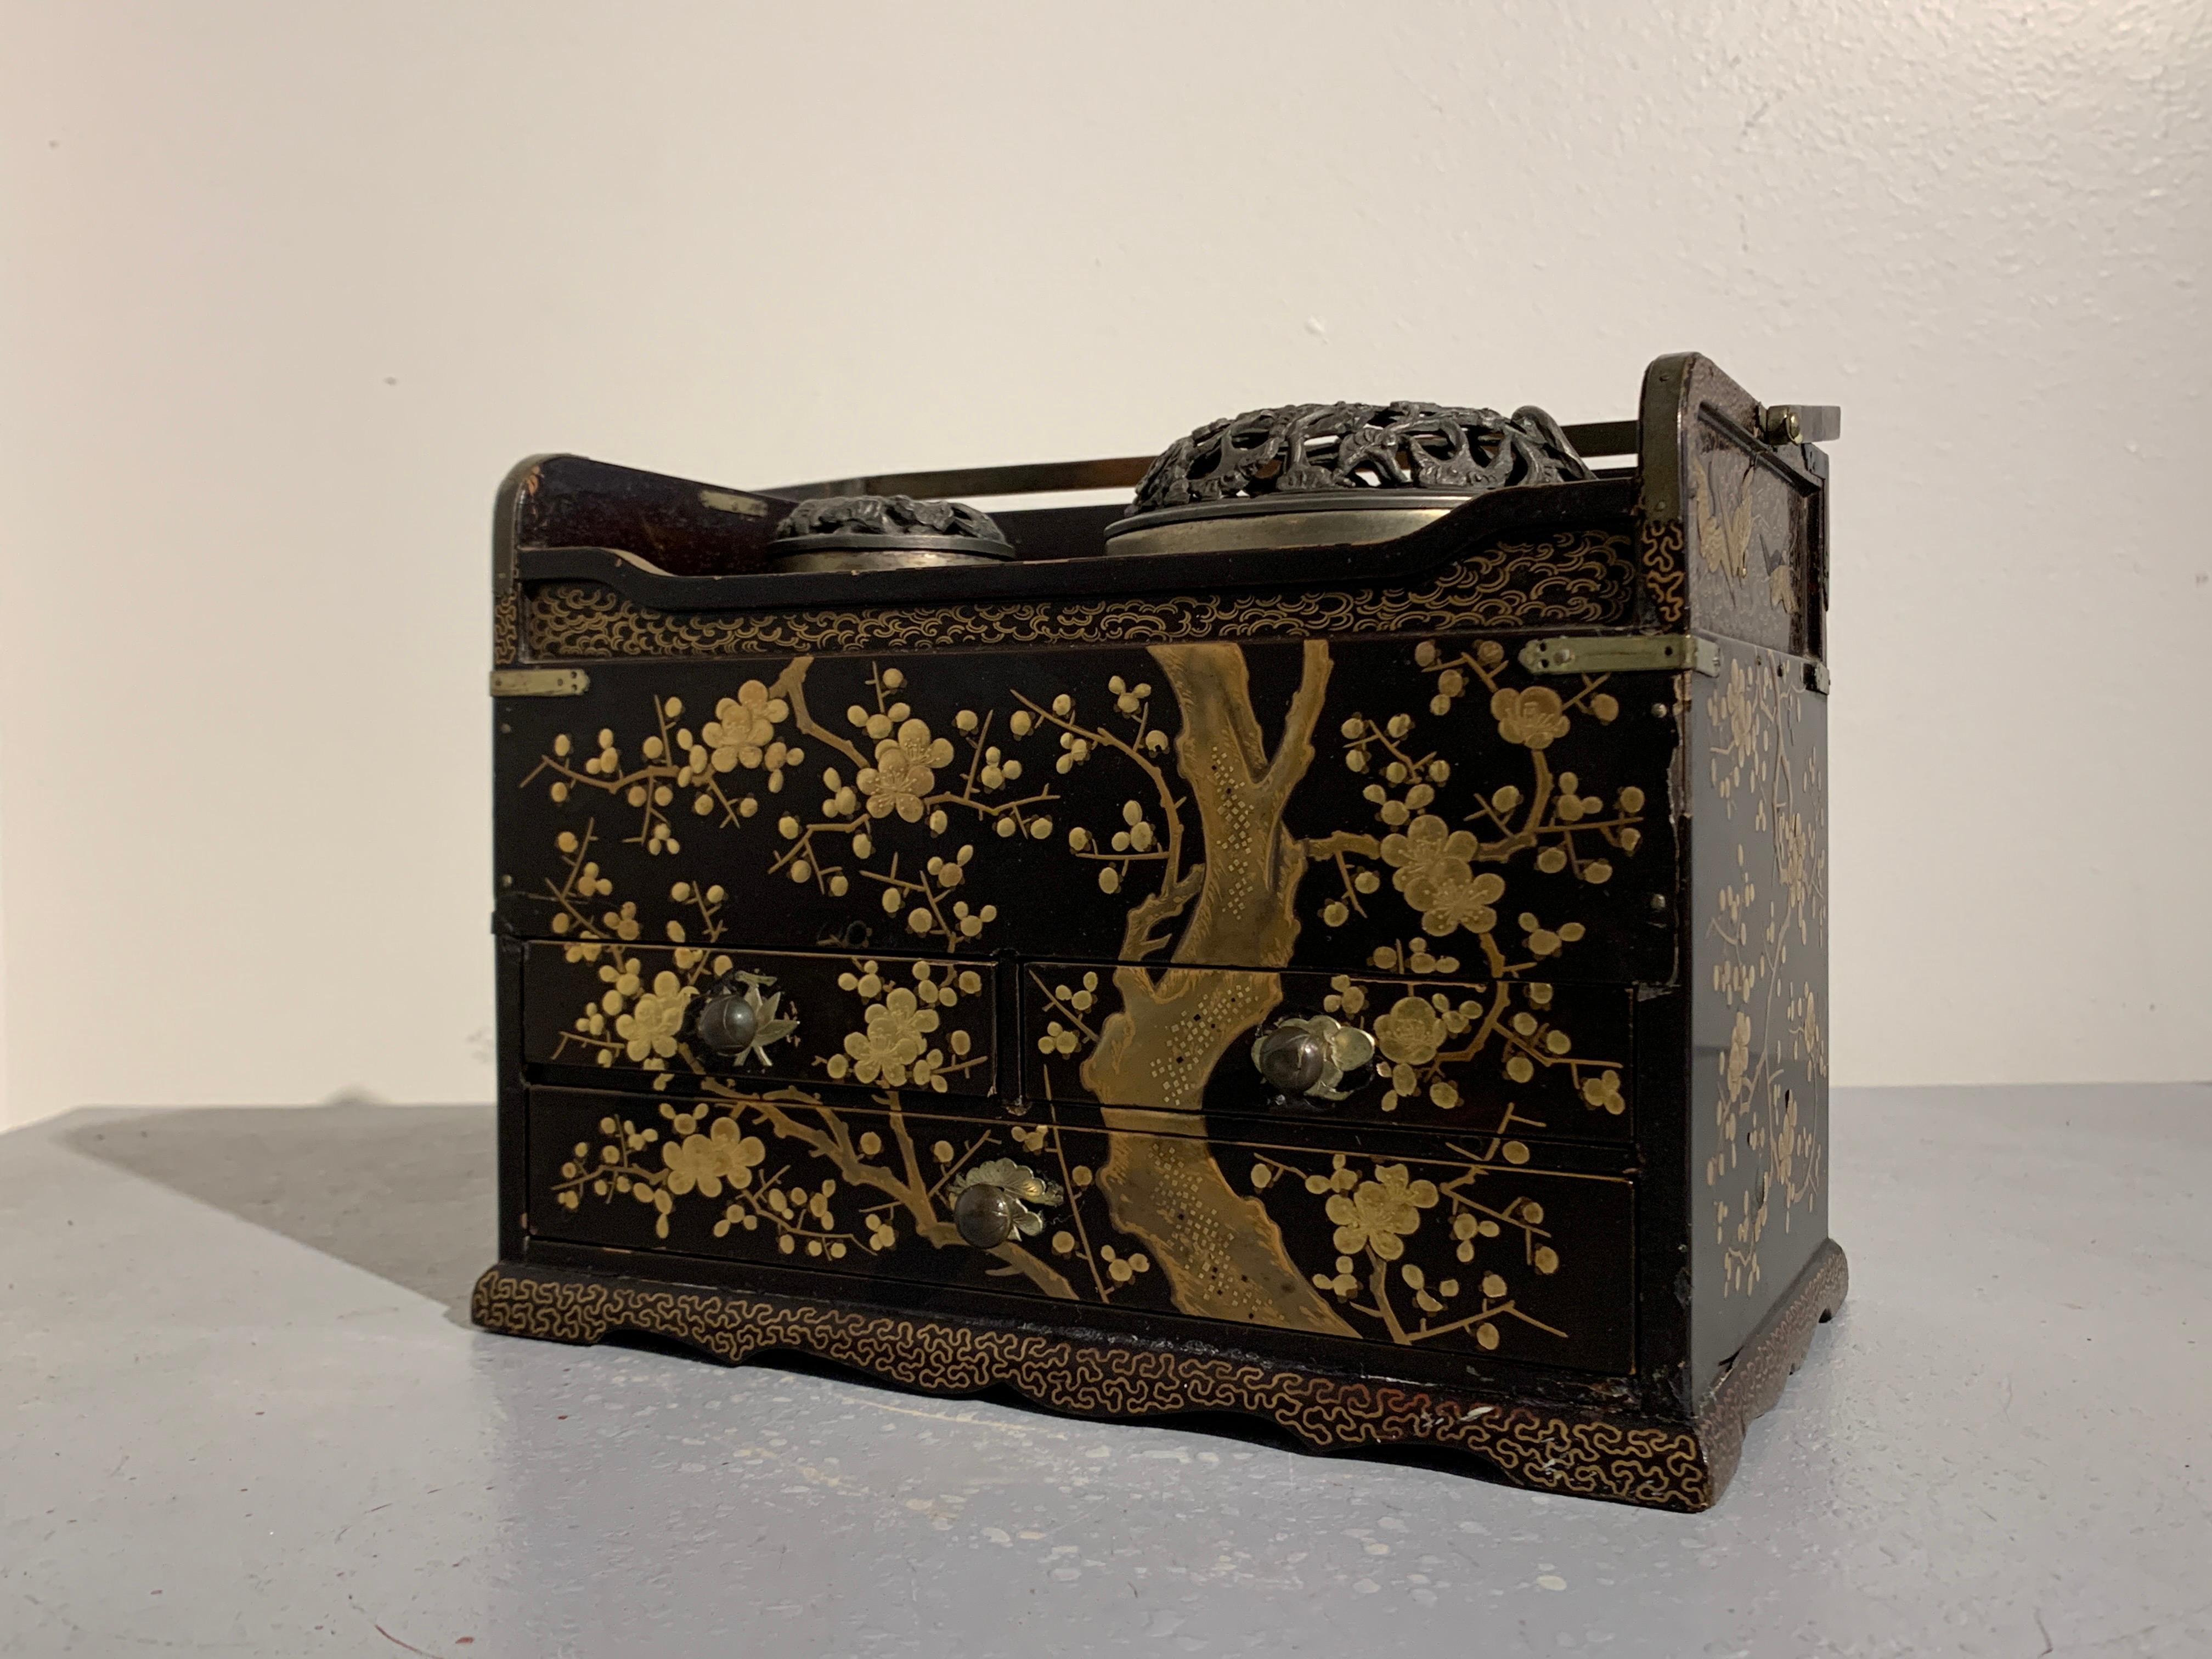 Eine sehr schöne japanische Maki-e-Lack verzierte Tabako Bon, oder Rauchkasten, späte Edo-Periode, Mitte des 19. Jahrhunderts, Japan.

Die elegante Räucherbox aus schwarzem Lack ist mit einem wunderschönen Takamaki-e-Motiv aus Goldlack verziert,